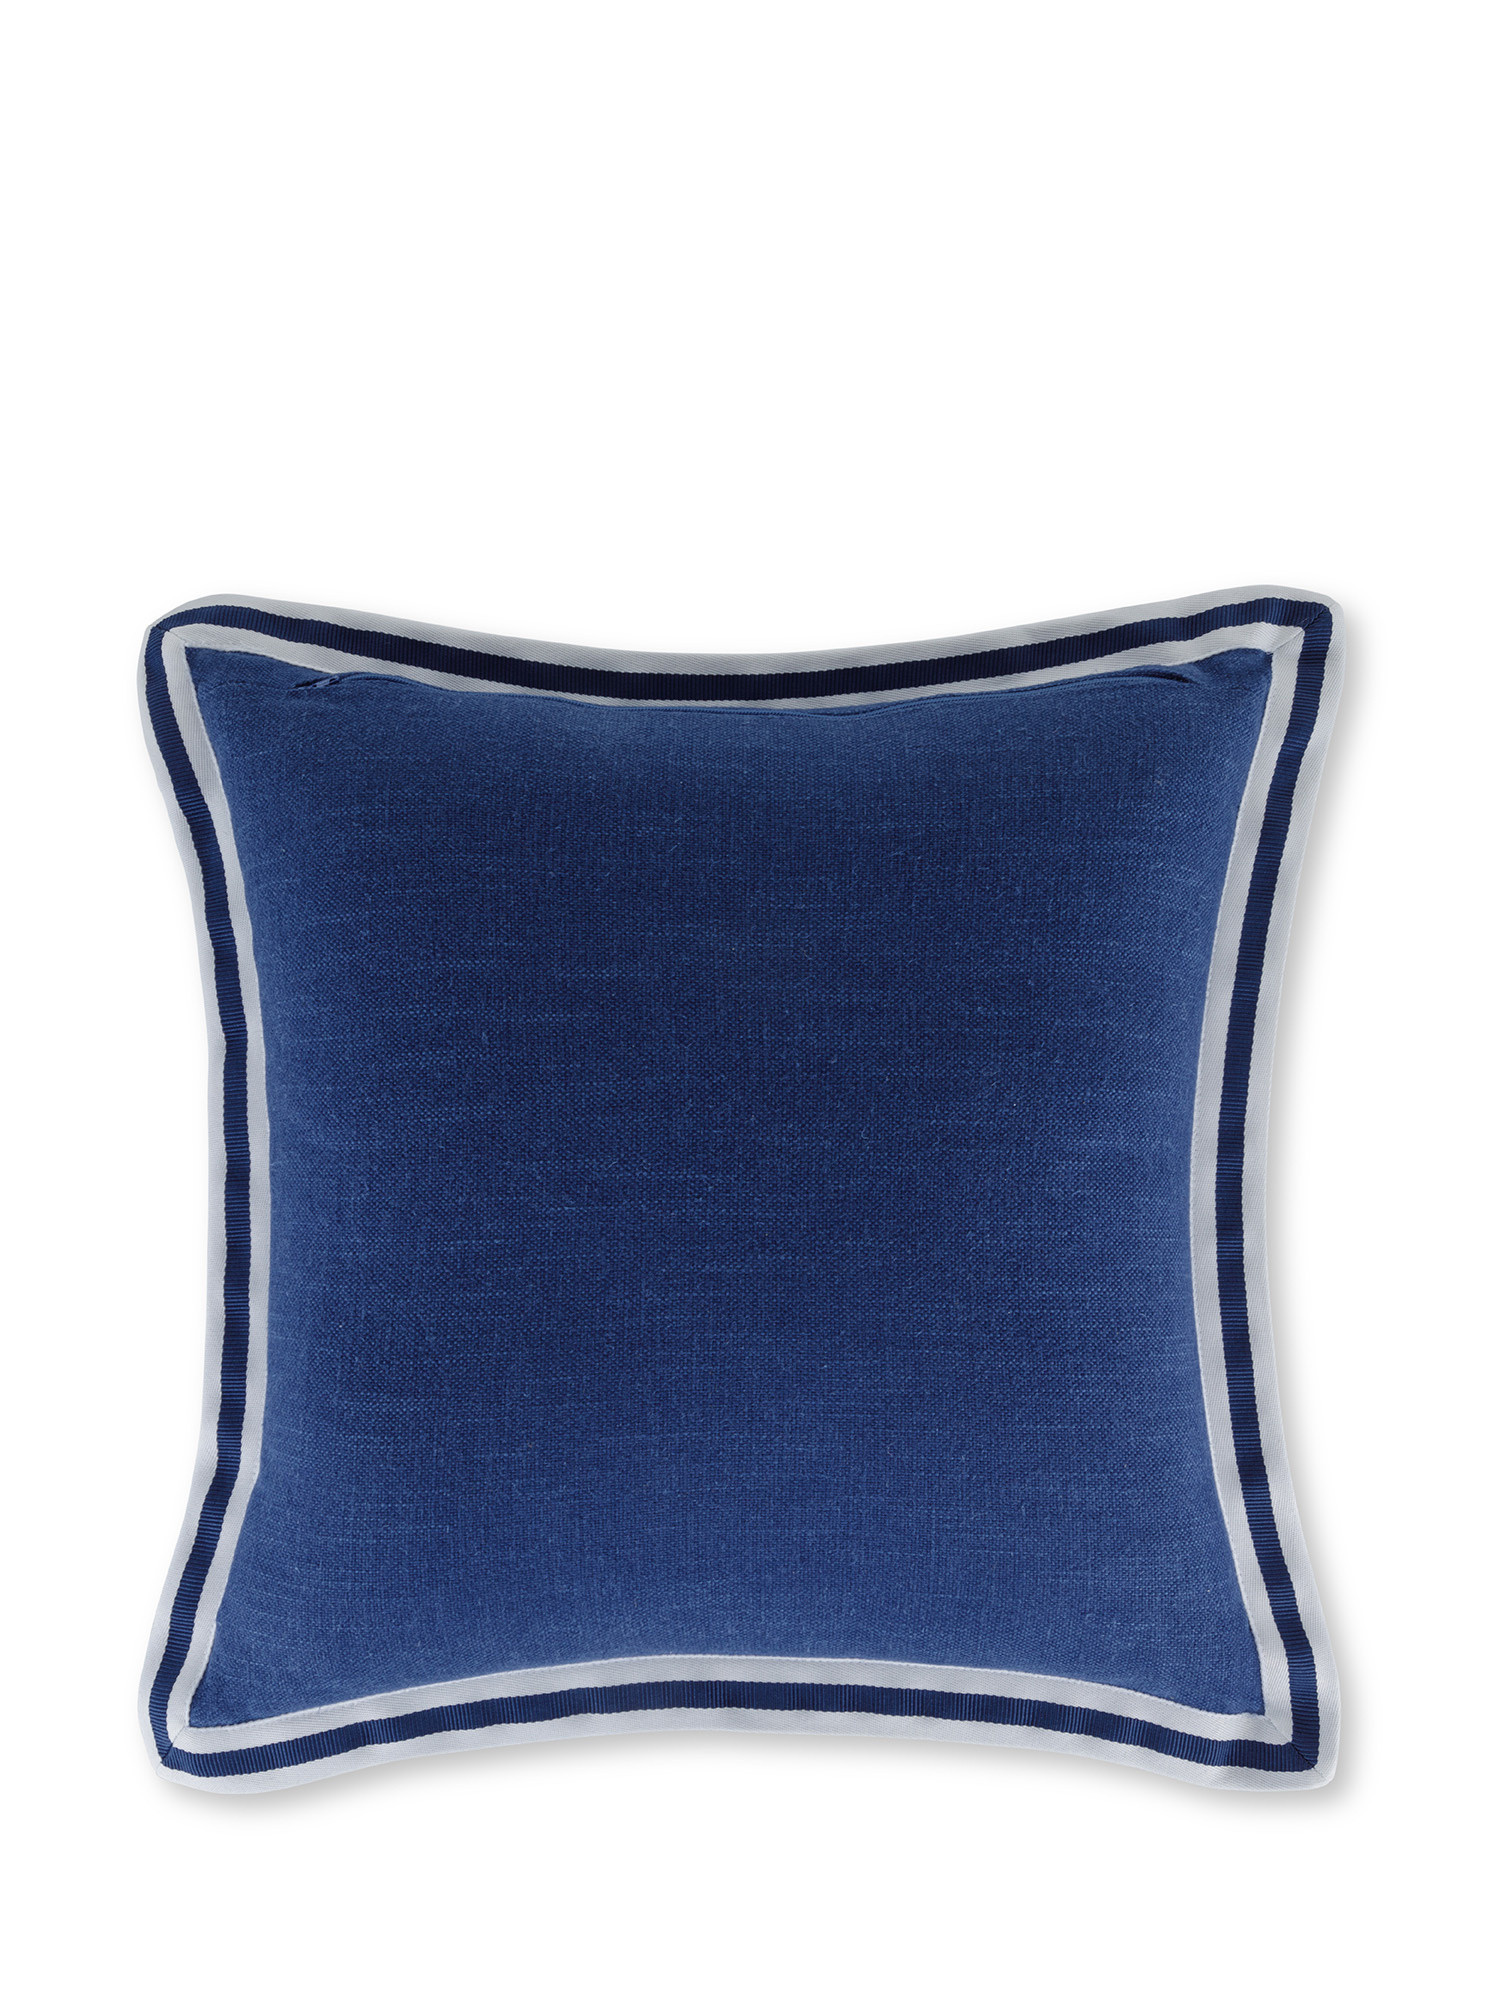 Cuscino con bordo rigato 45x45 cm, Blu, large image number 1